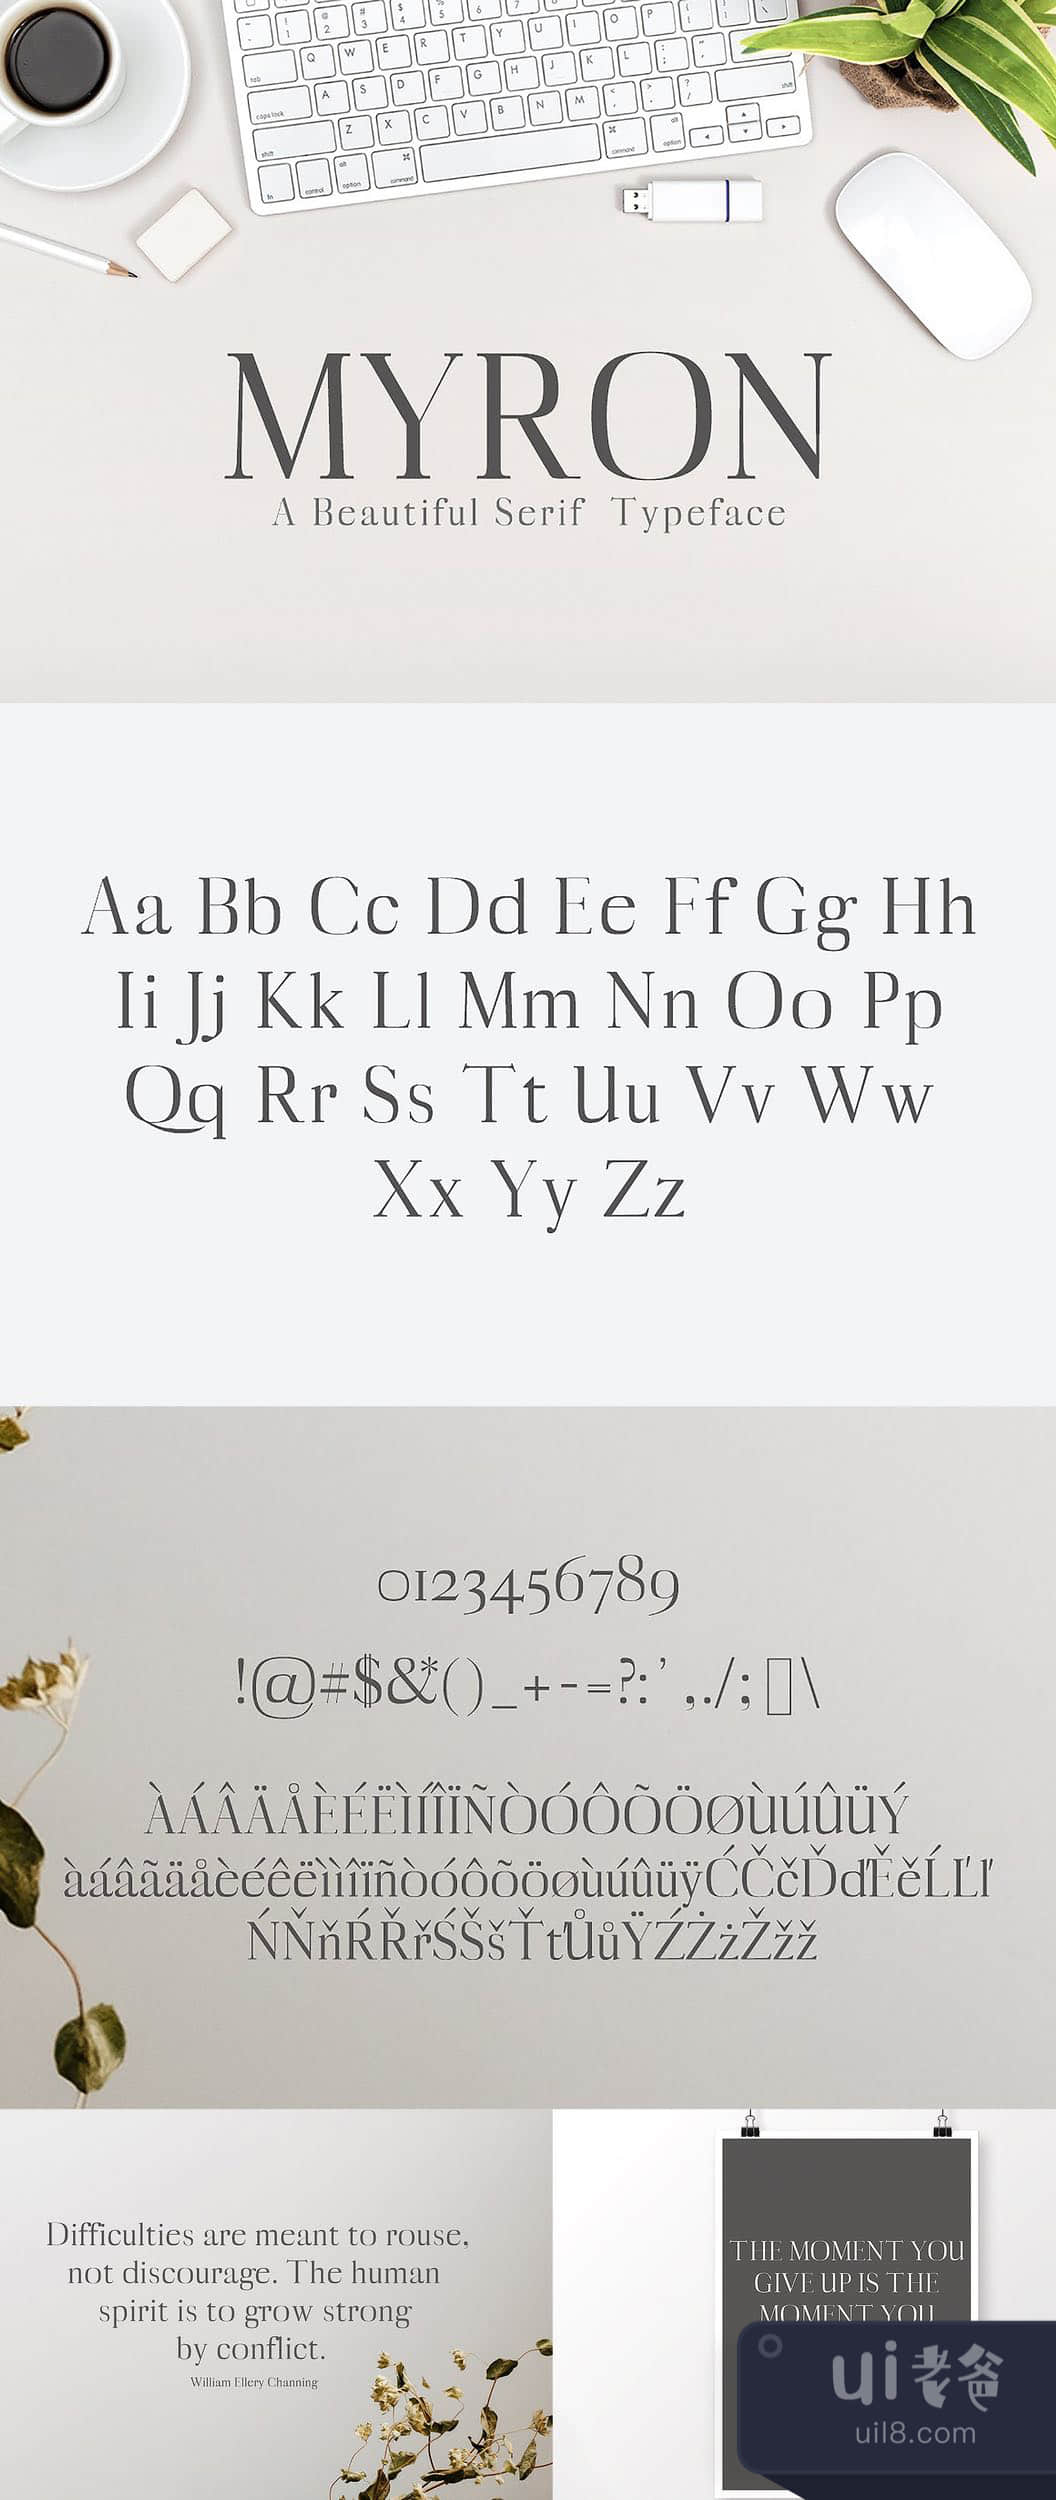 麦伦塞夫字体 (Myron Serif Typeface)插图1